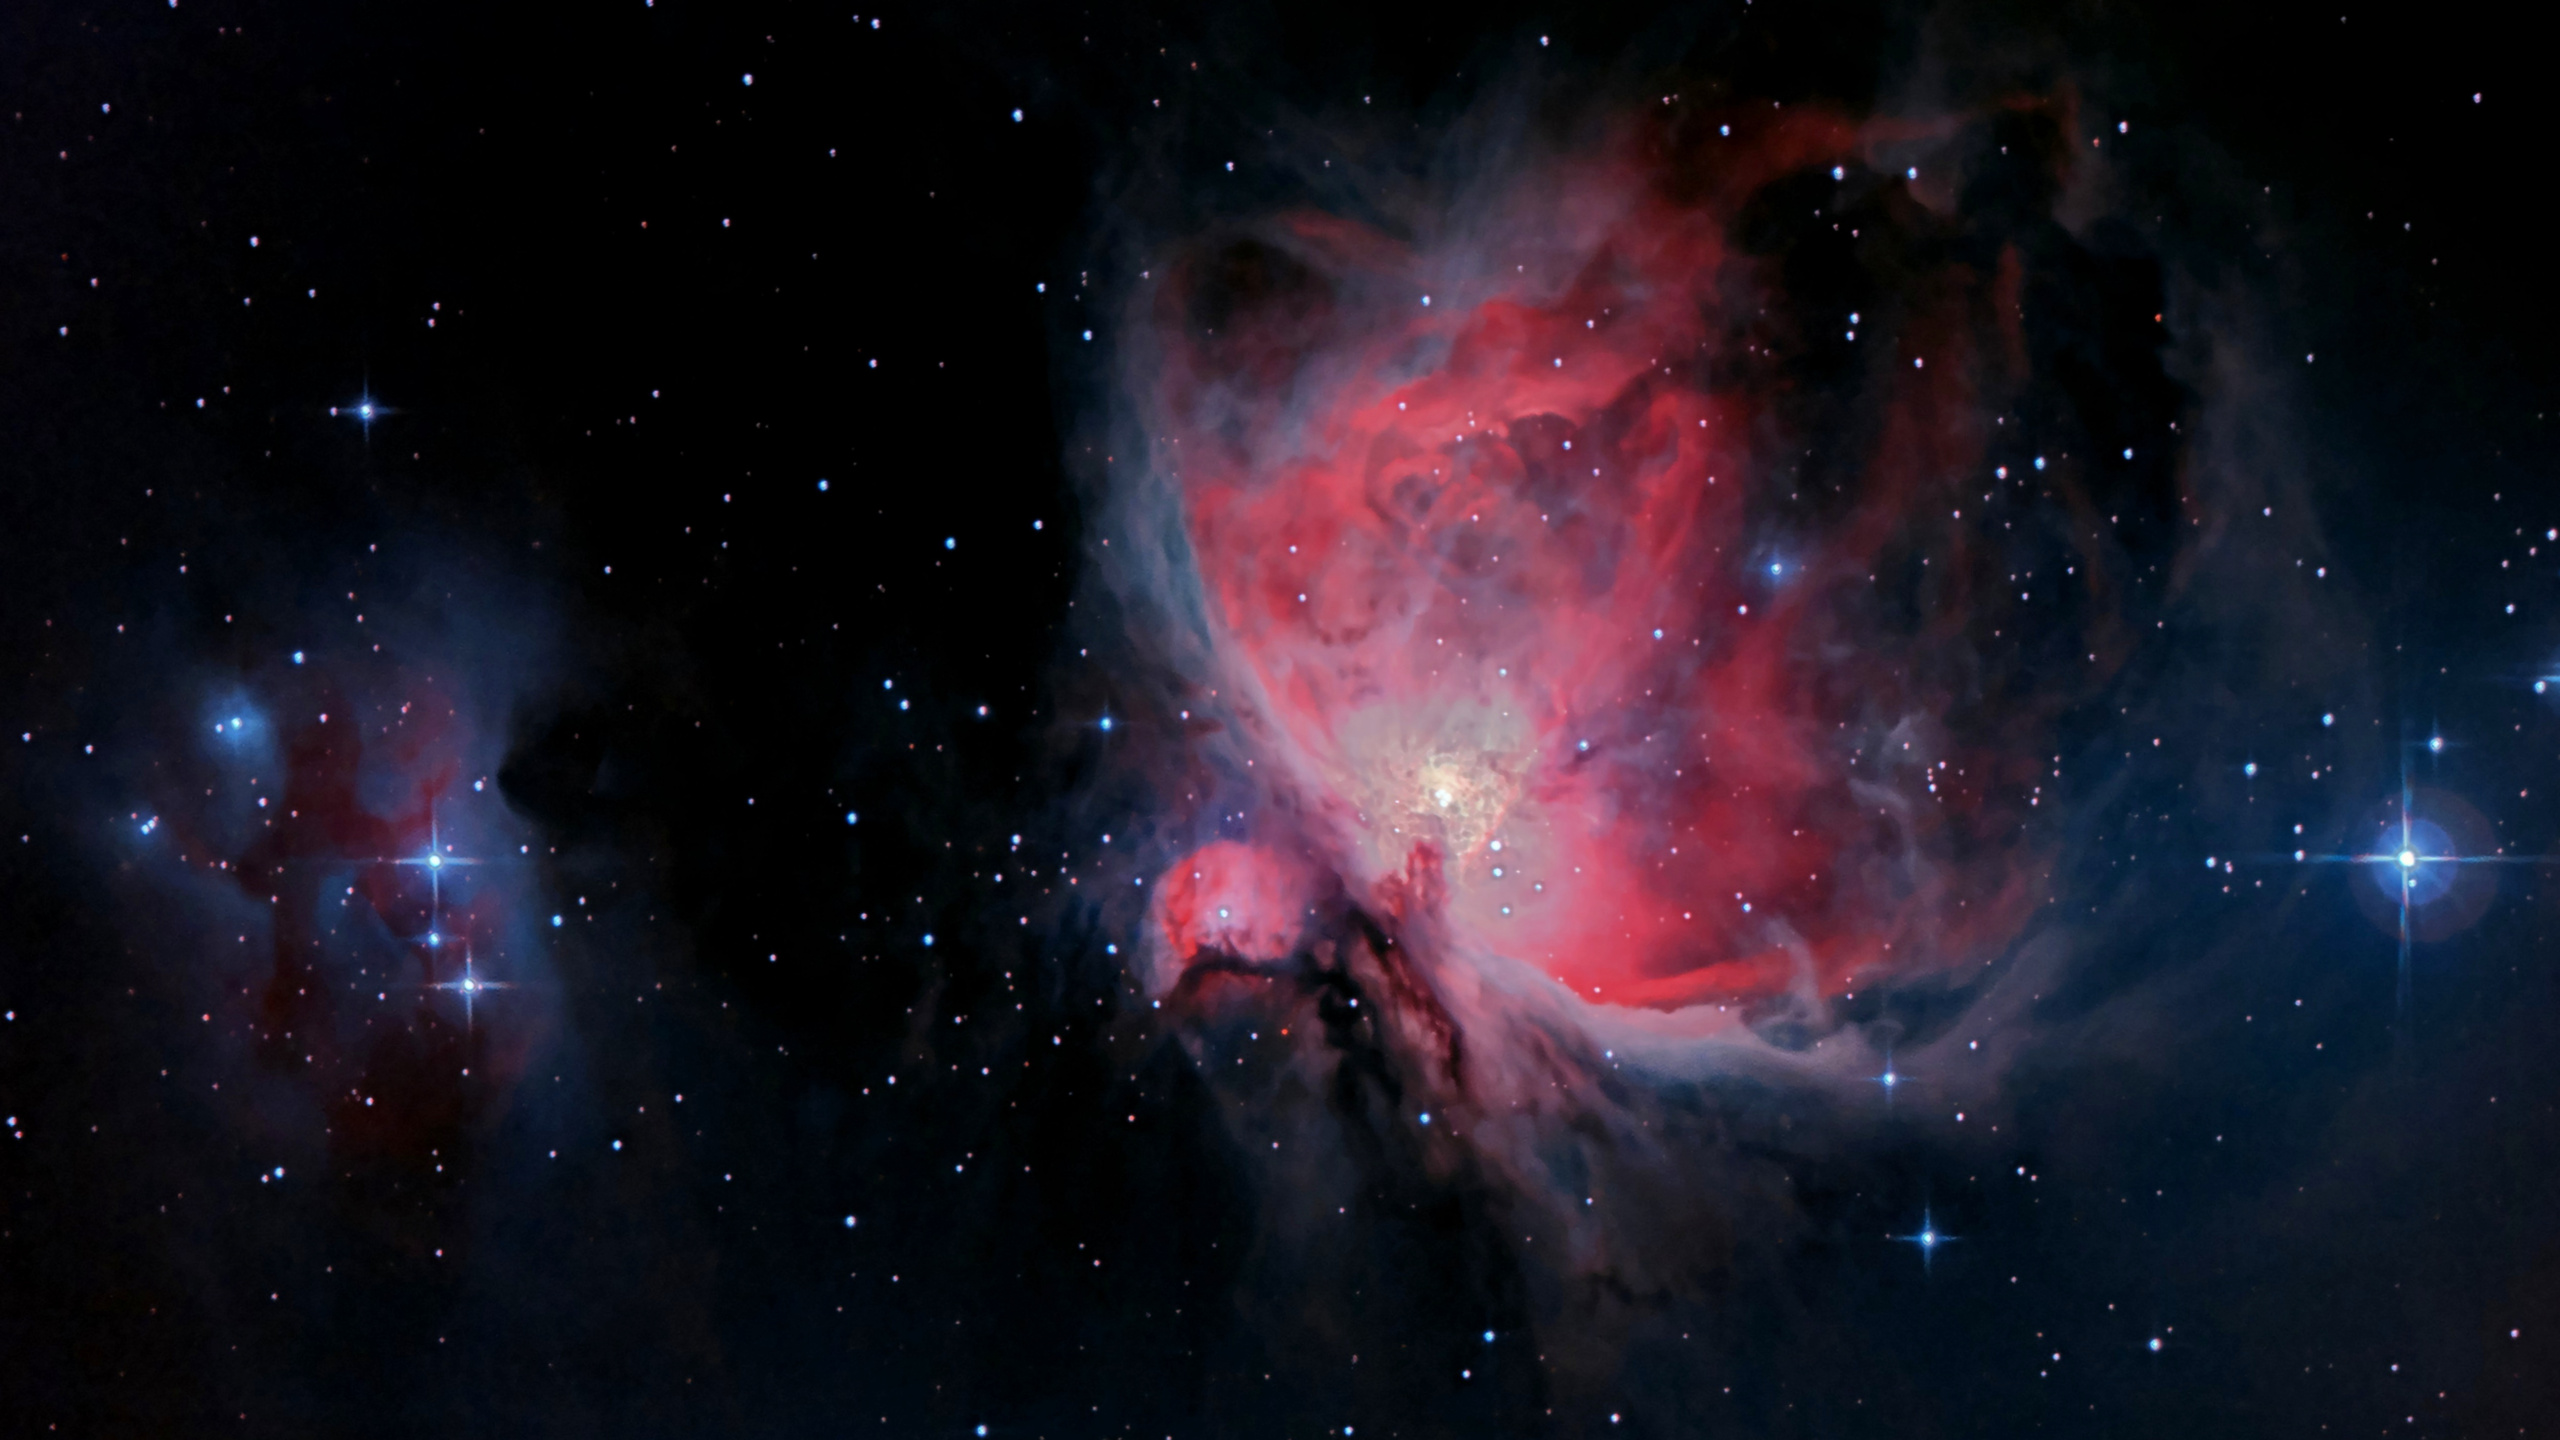 猎户座星云, Sh2-279, Orion, 明星, 外层空间 壁纸 2560x1440 允许